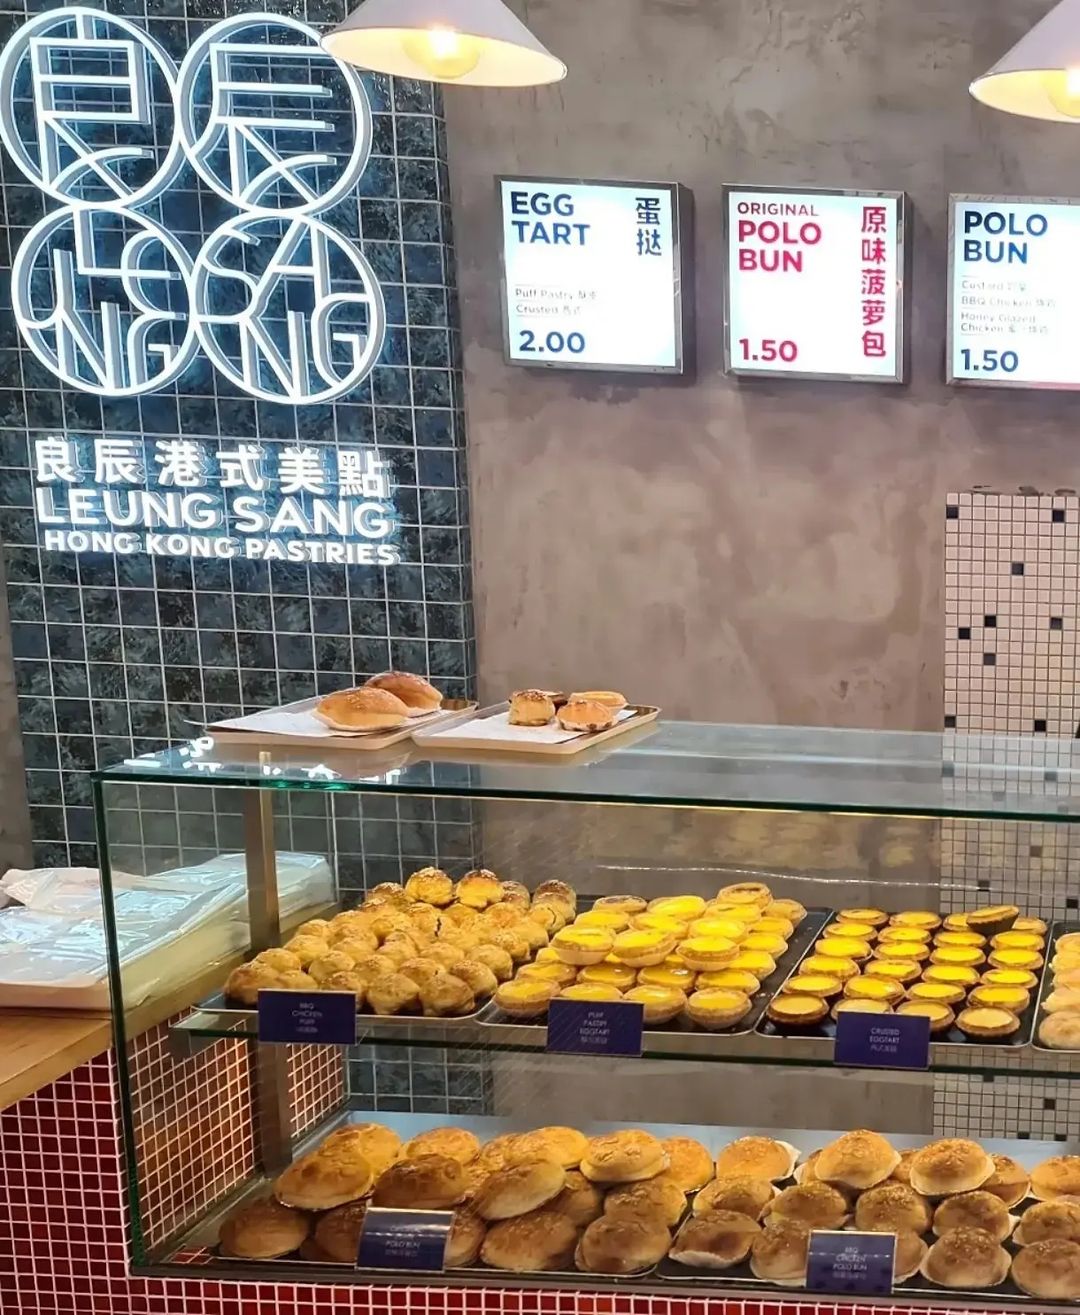 Leung Sang Hong Kong Pastries - Singapore